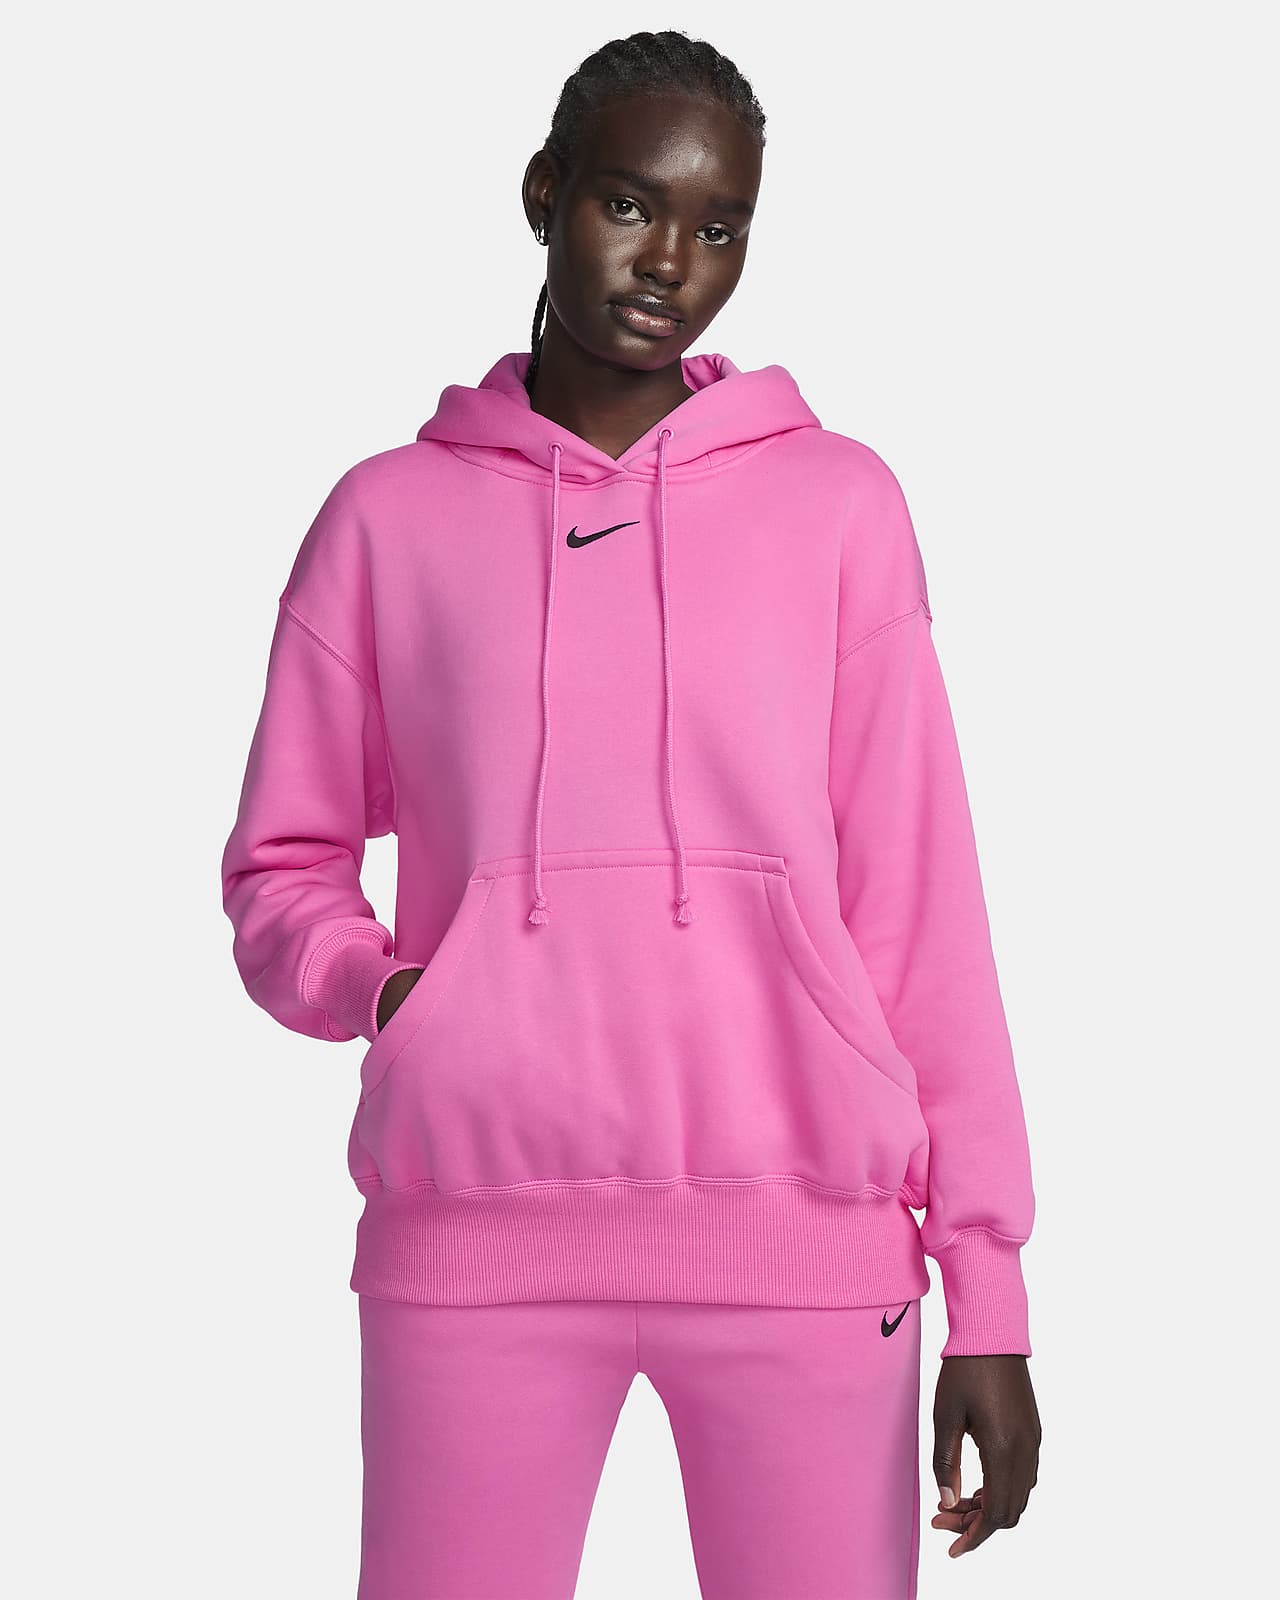 Huvtröja Nike Sportswear Phoenix Fleece i oversize-modell för kvinnor